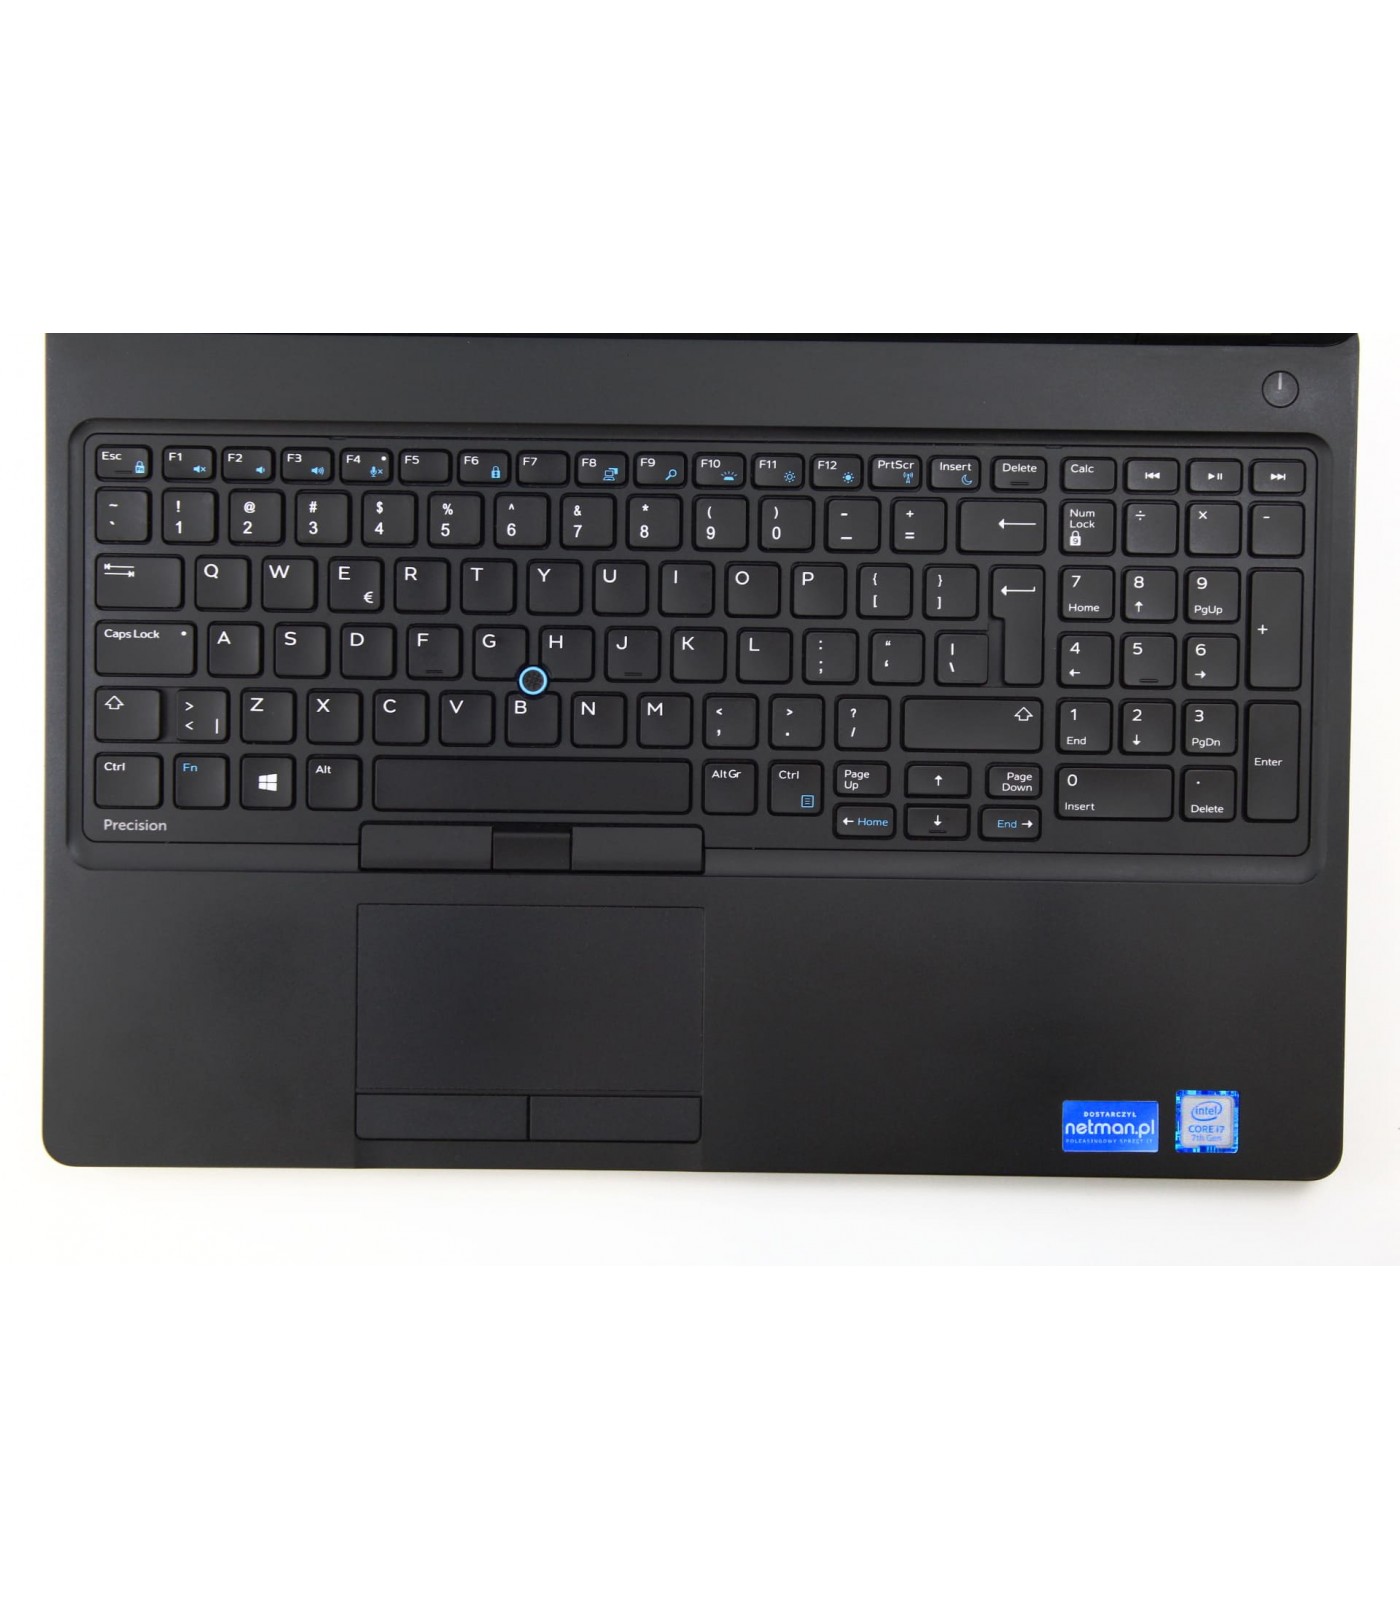 Poleasinowy laptop Dell Precision 3520 z procesorem i7-7700HQ i dedykowana kartą Nvidia Quadro M620 w klasie A